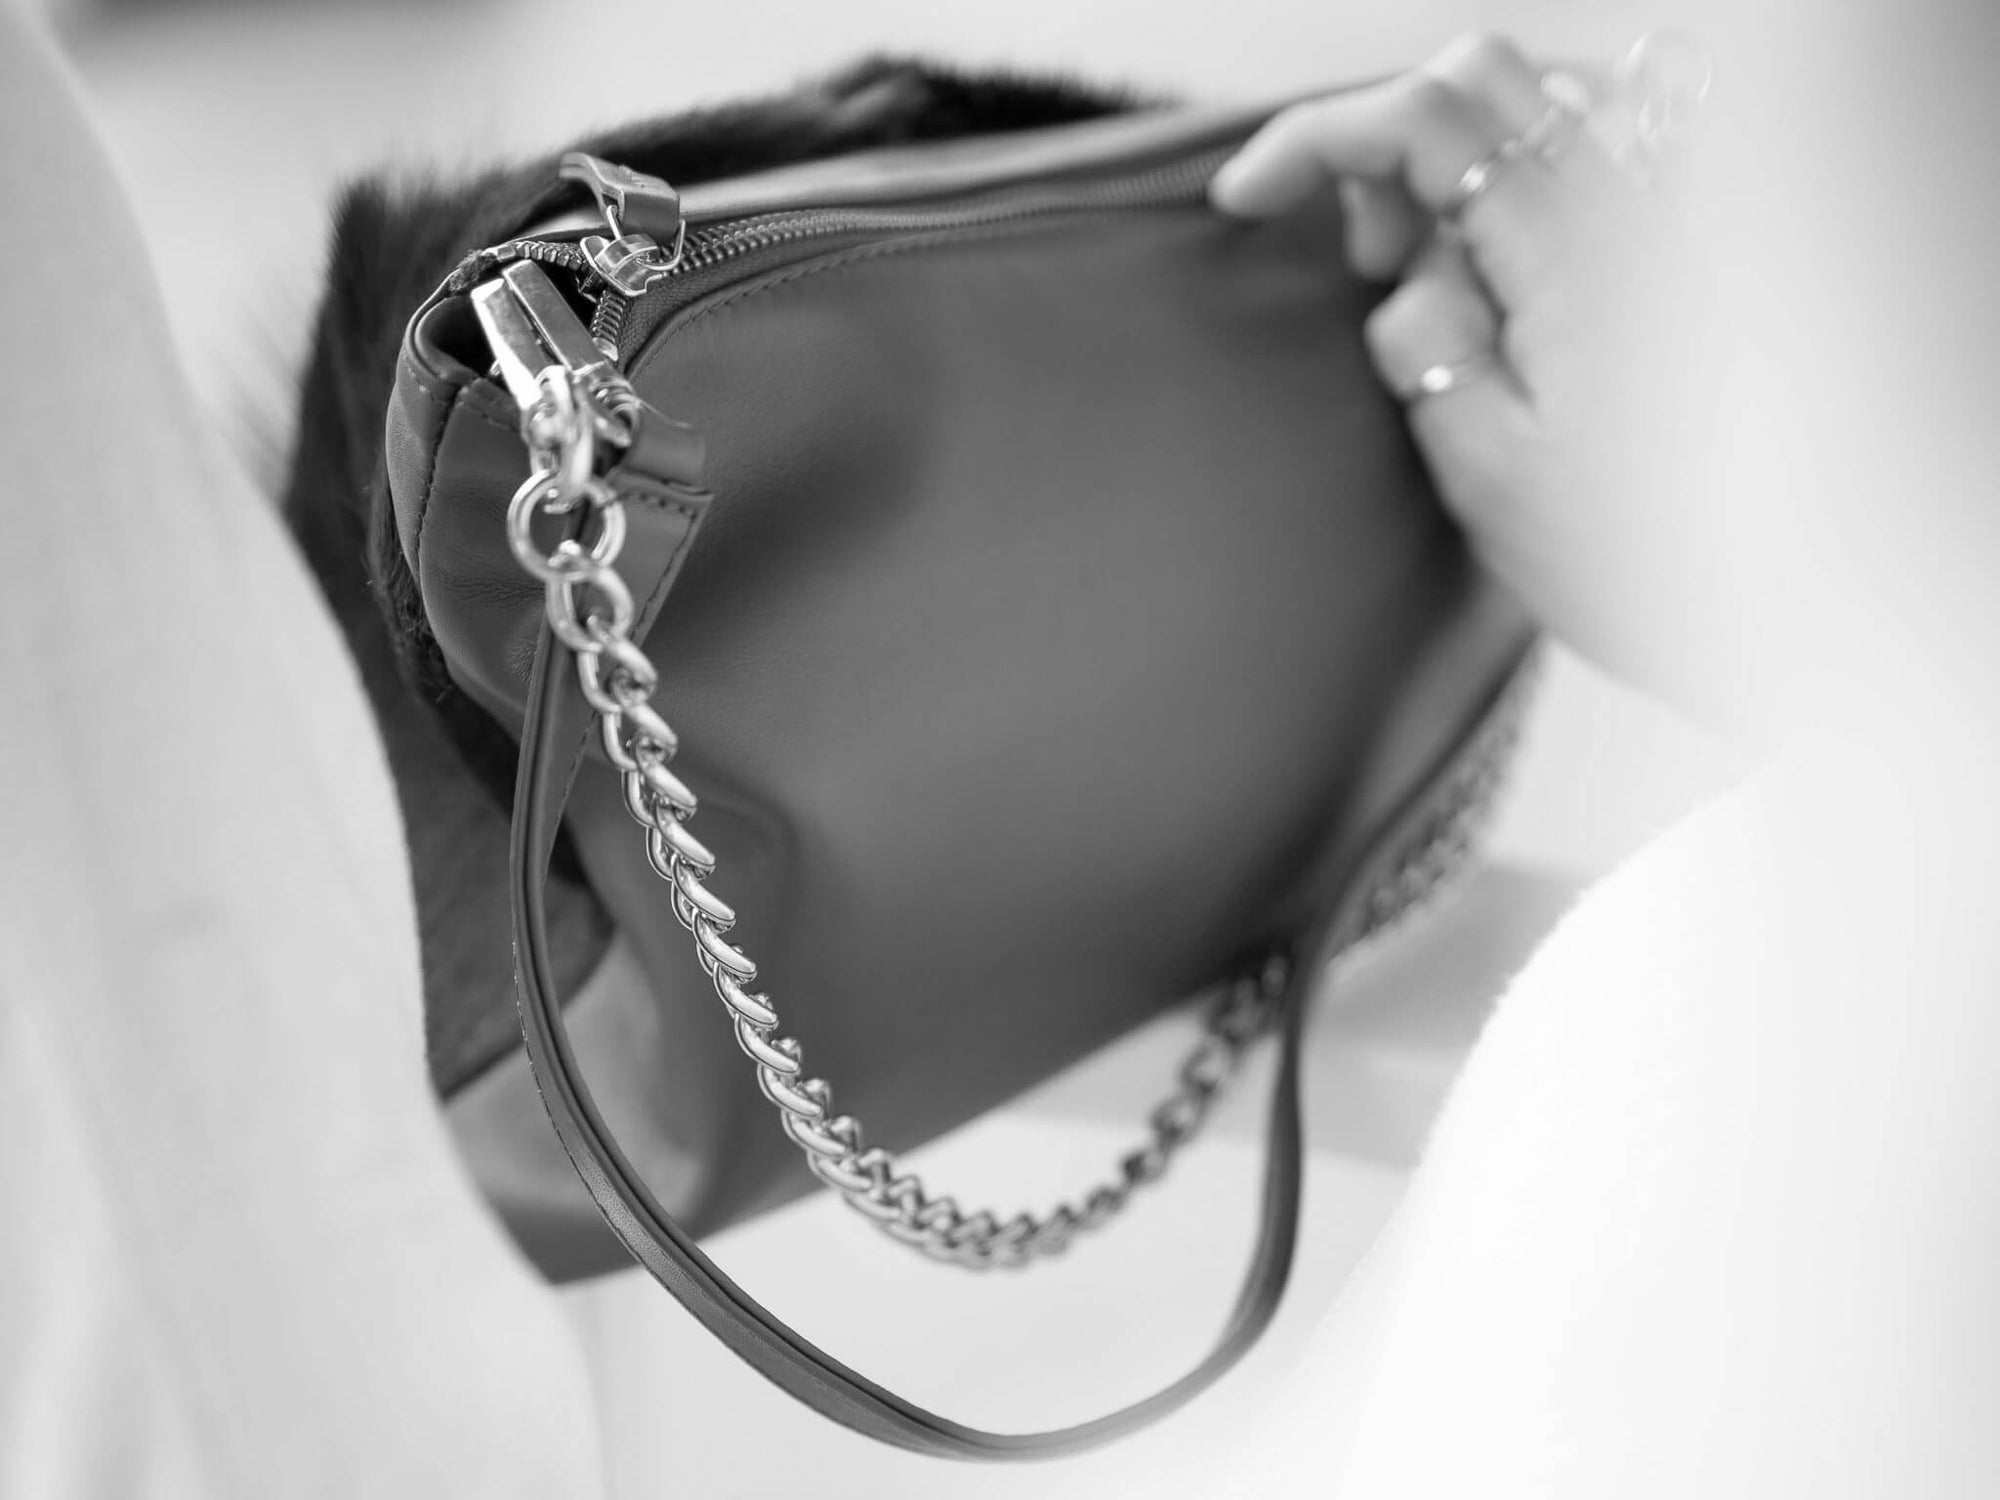 Multiway Springbok Handbag in Violet with a Stripe